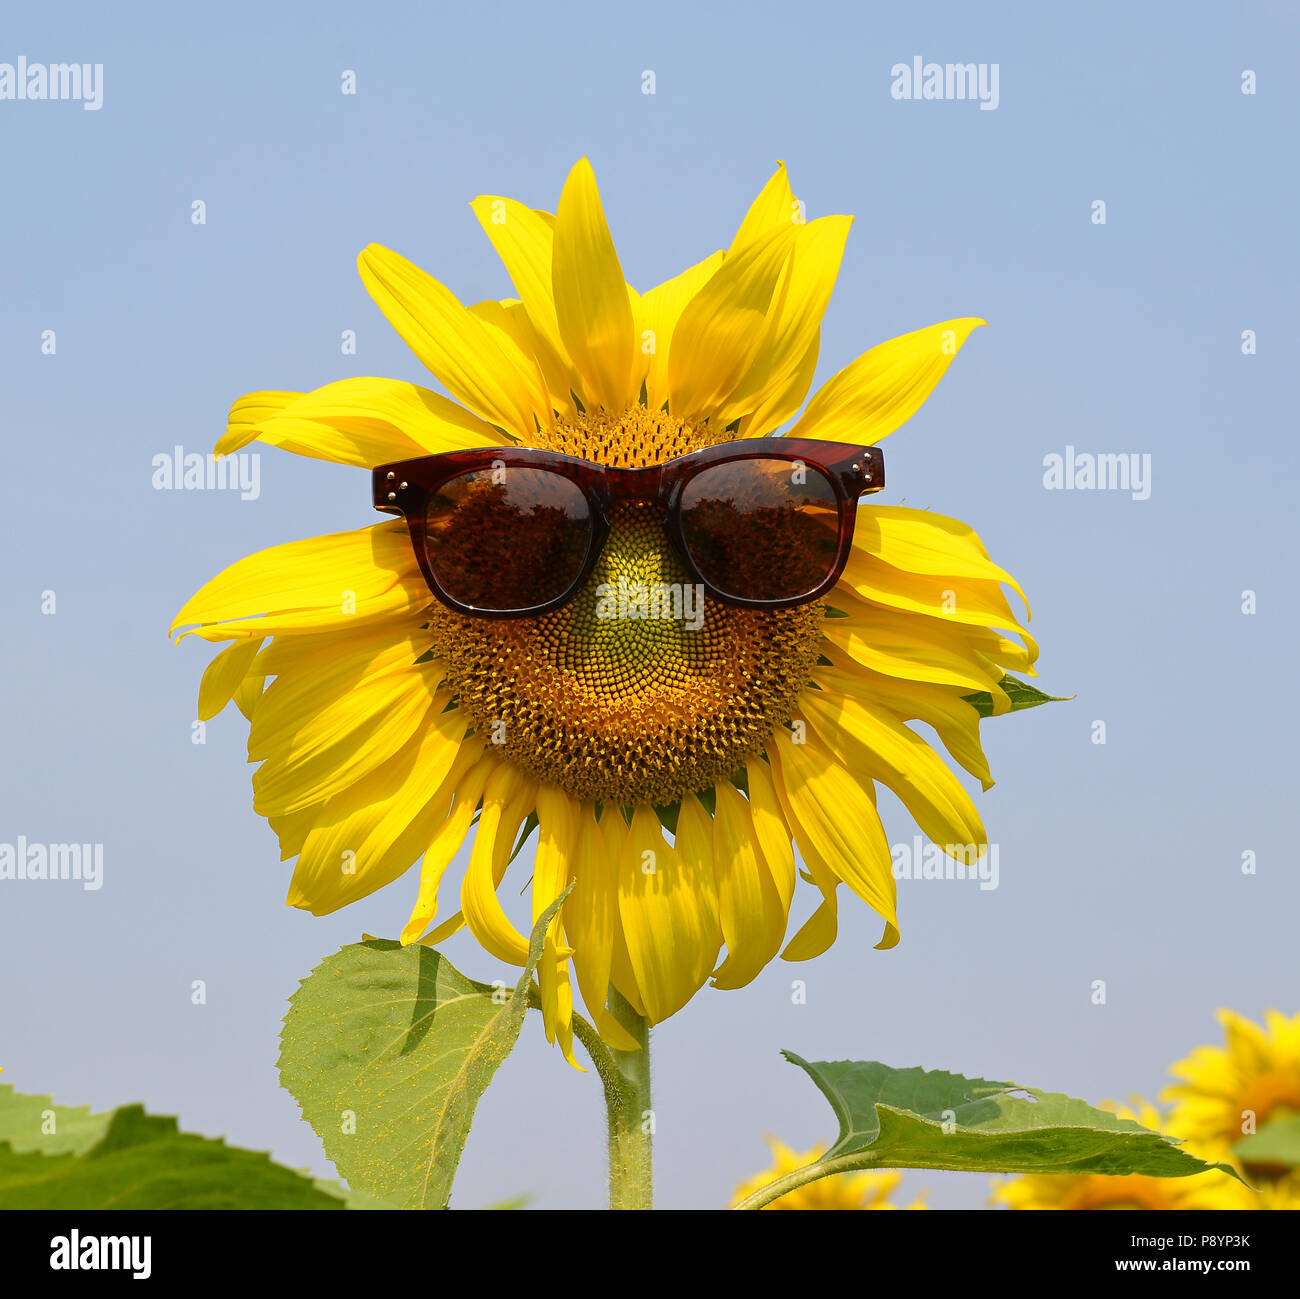 Sunflower wearing sunglasses Stock Photo